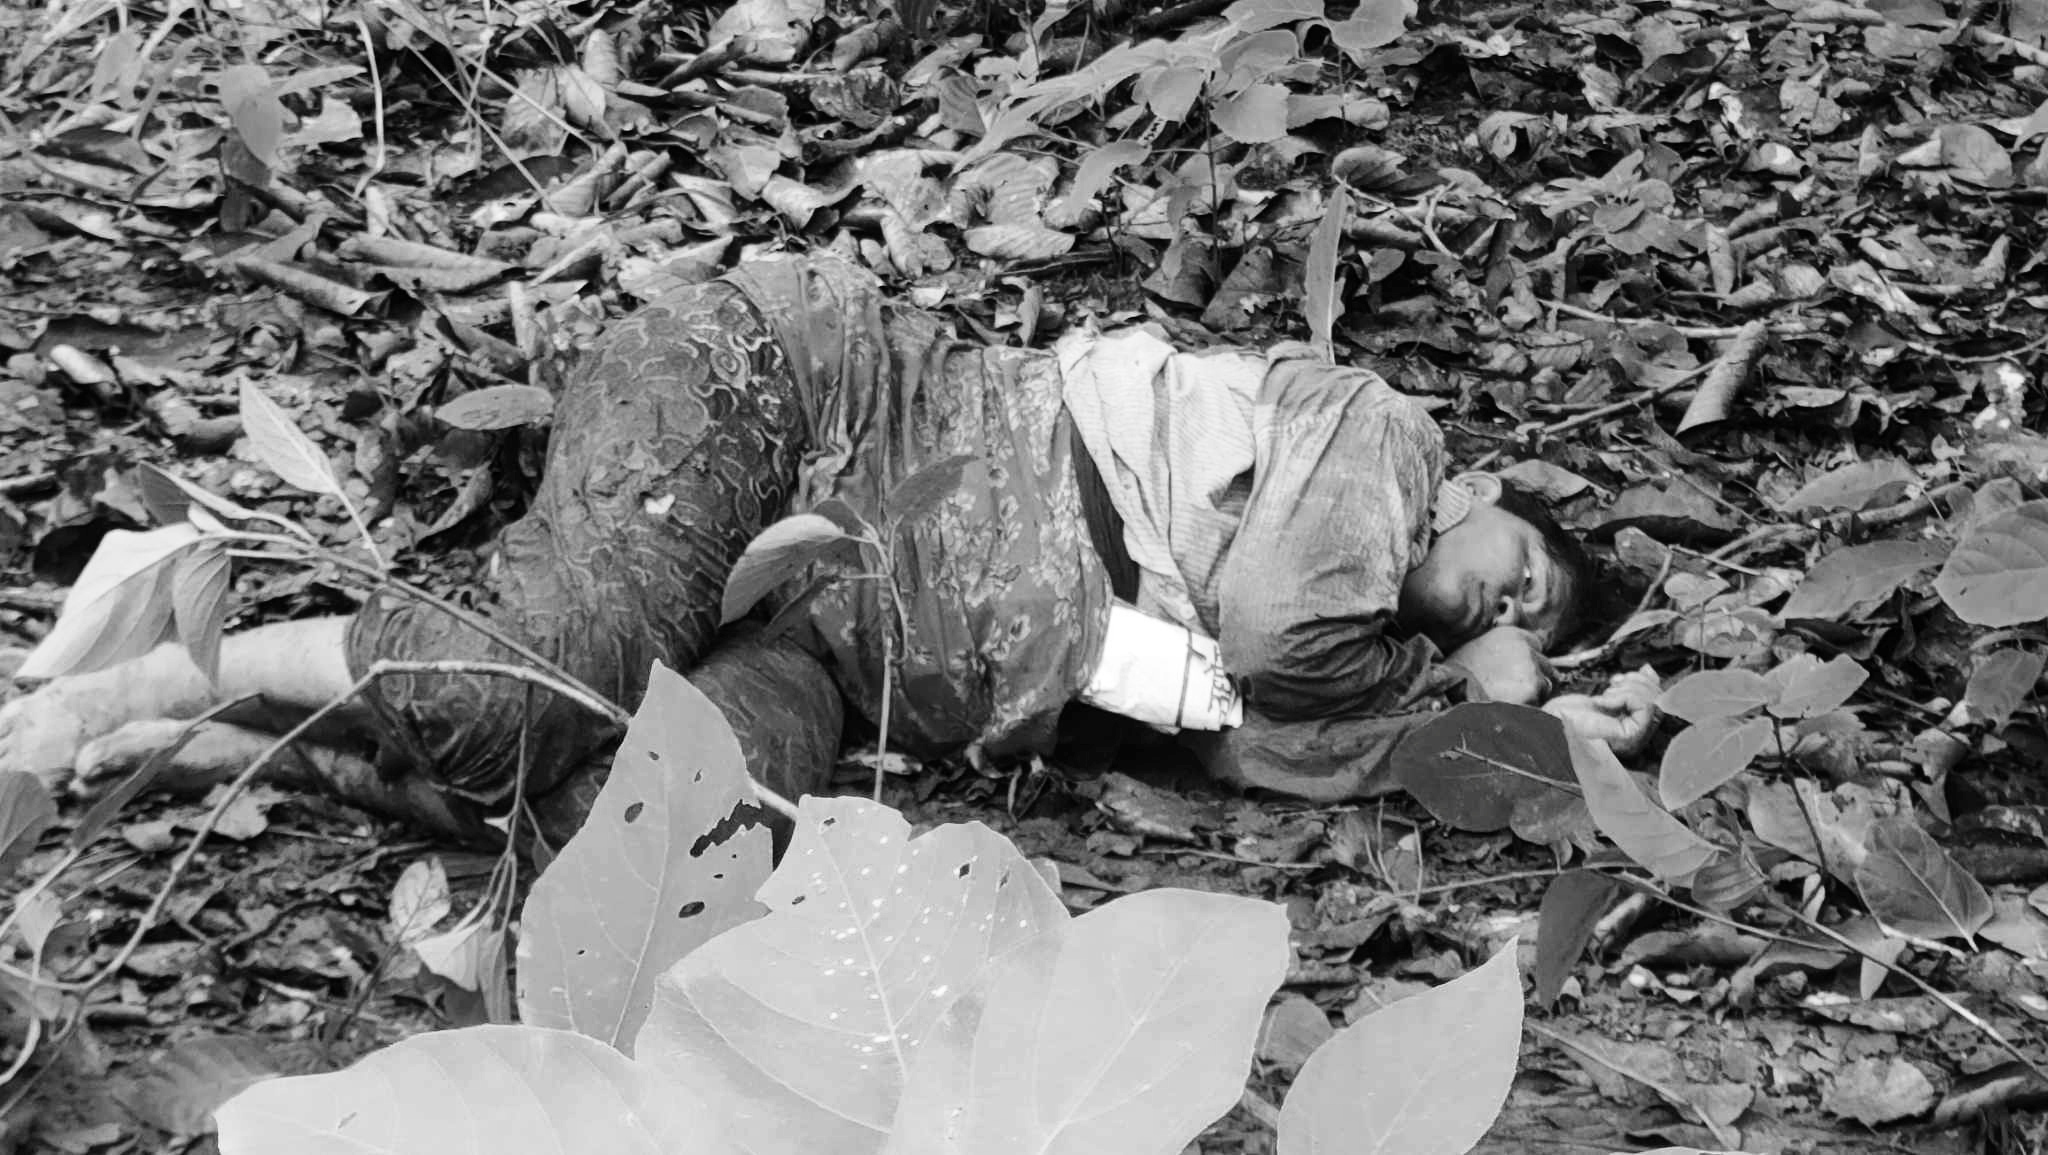 कञ्चनपुरमा गैँडाको आक्रमणबाट एक जना महिलाको मृत्यु